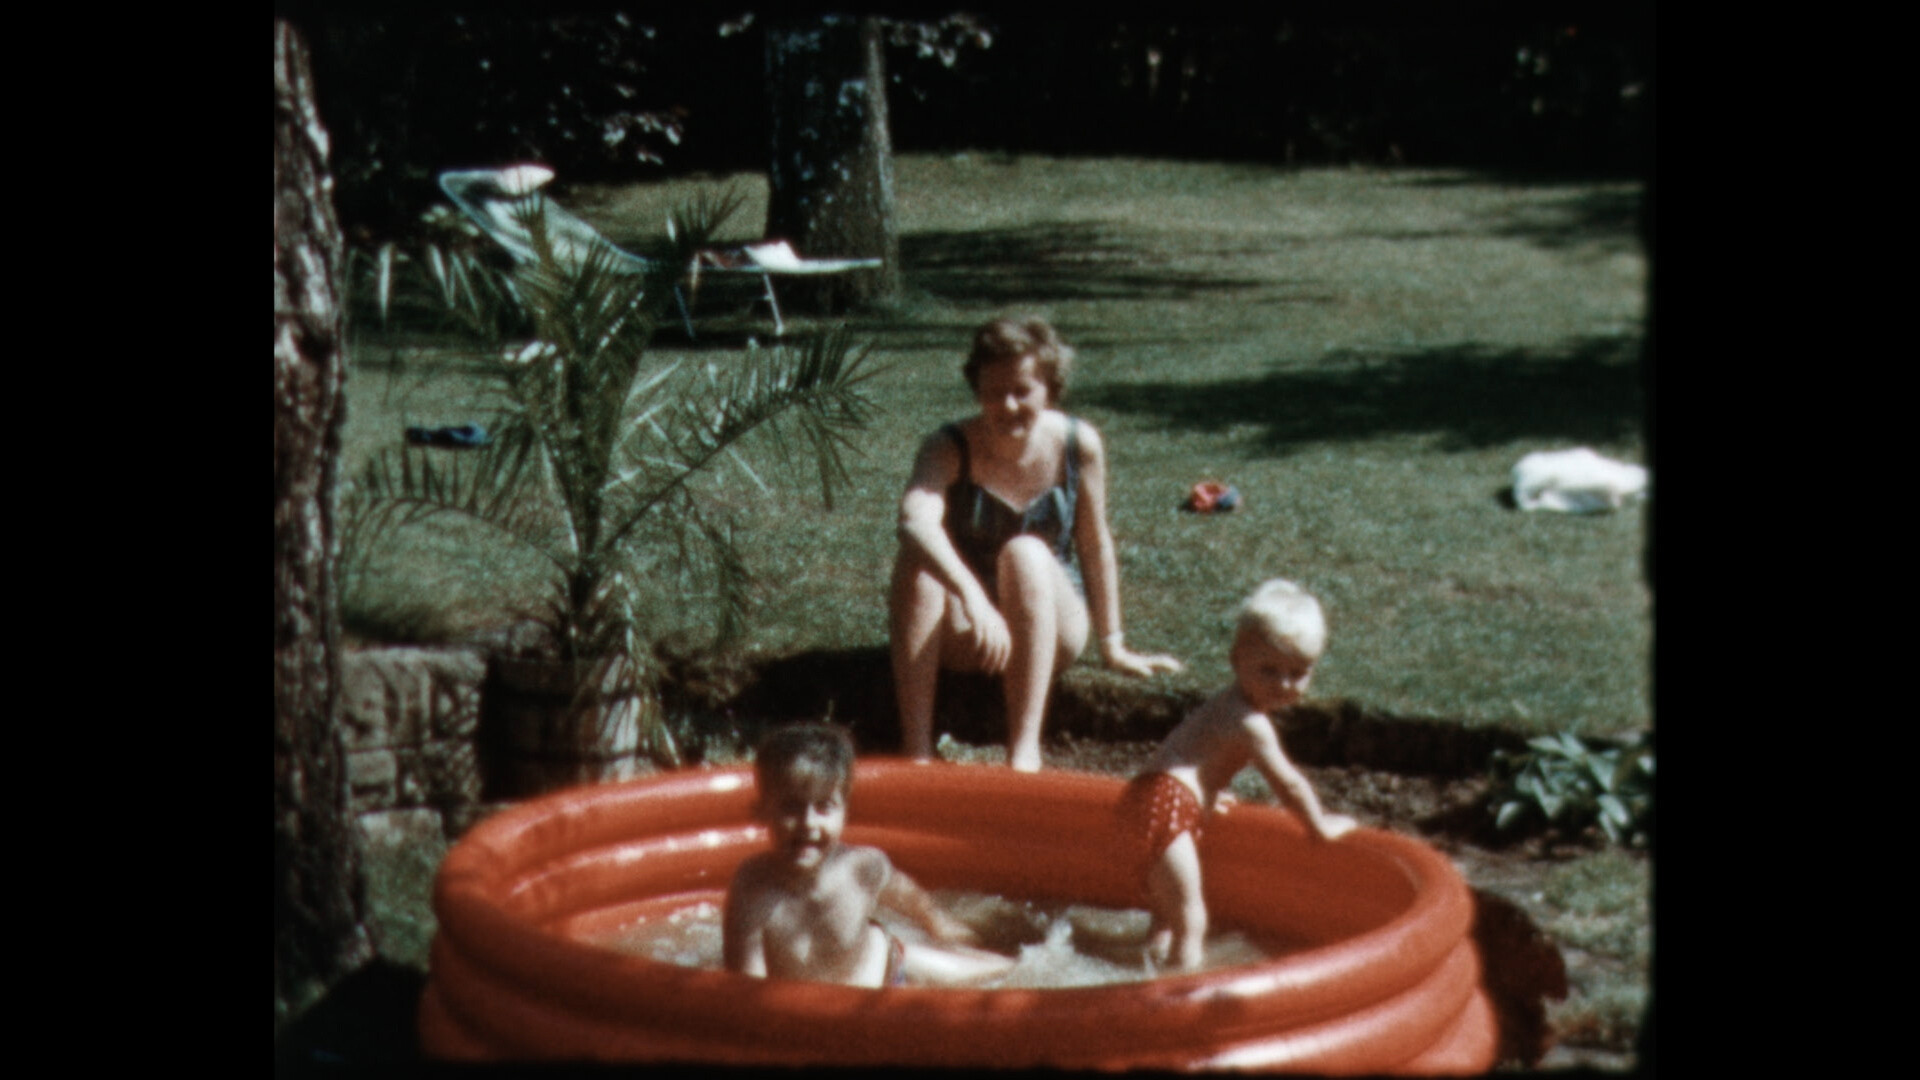 Körnige Aufnahme aus einem Garten. Auf dem kurz gemähten Rasen steht ein rotes, aufblasbares Planschbecken, in dem zwei Kinder im Kindergartenalter planschen. Hinter dem Becken sitzt eine Frau im Badeanzug und beobachtet die spielenden Kinder.